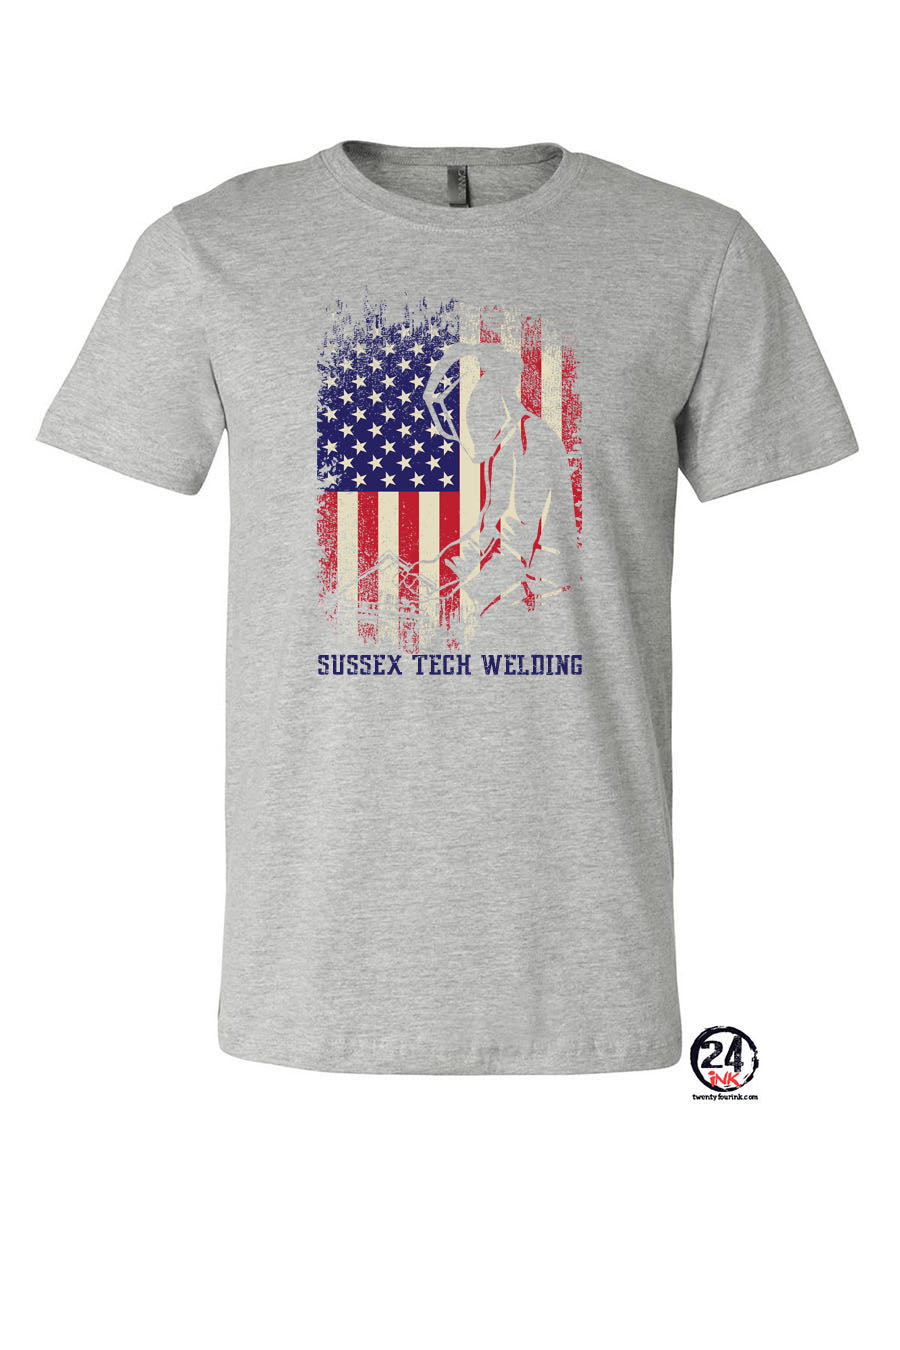 Sussex Tech Welding Design 5 T-Shirt